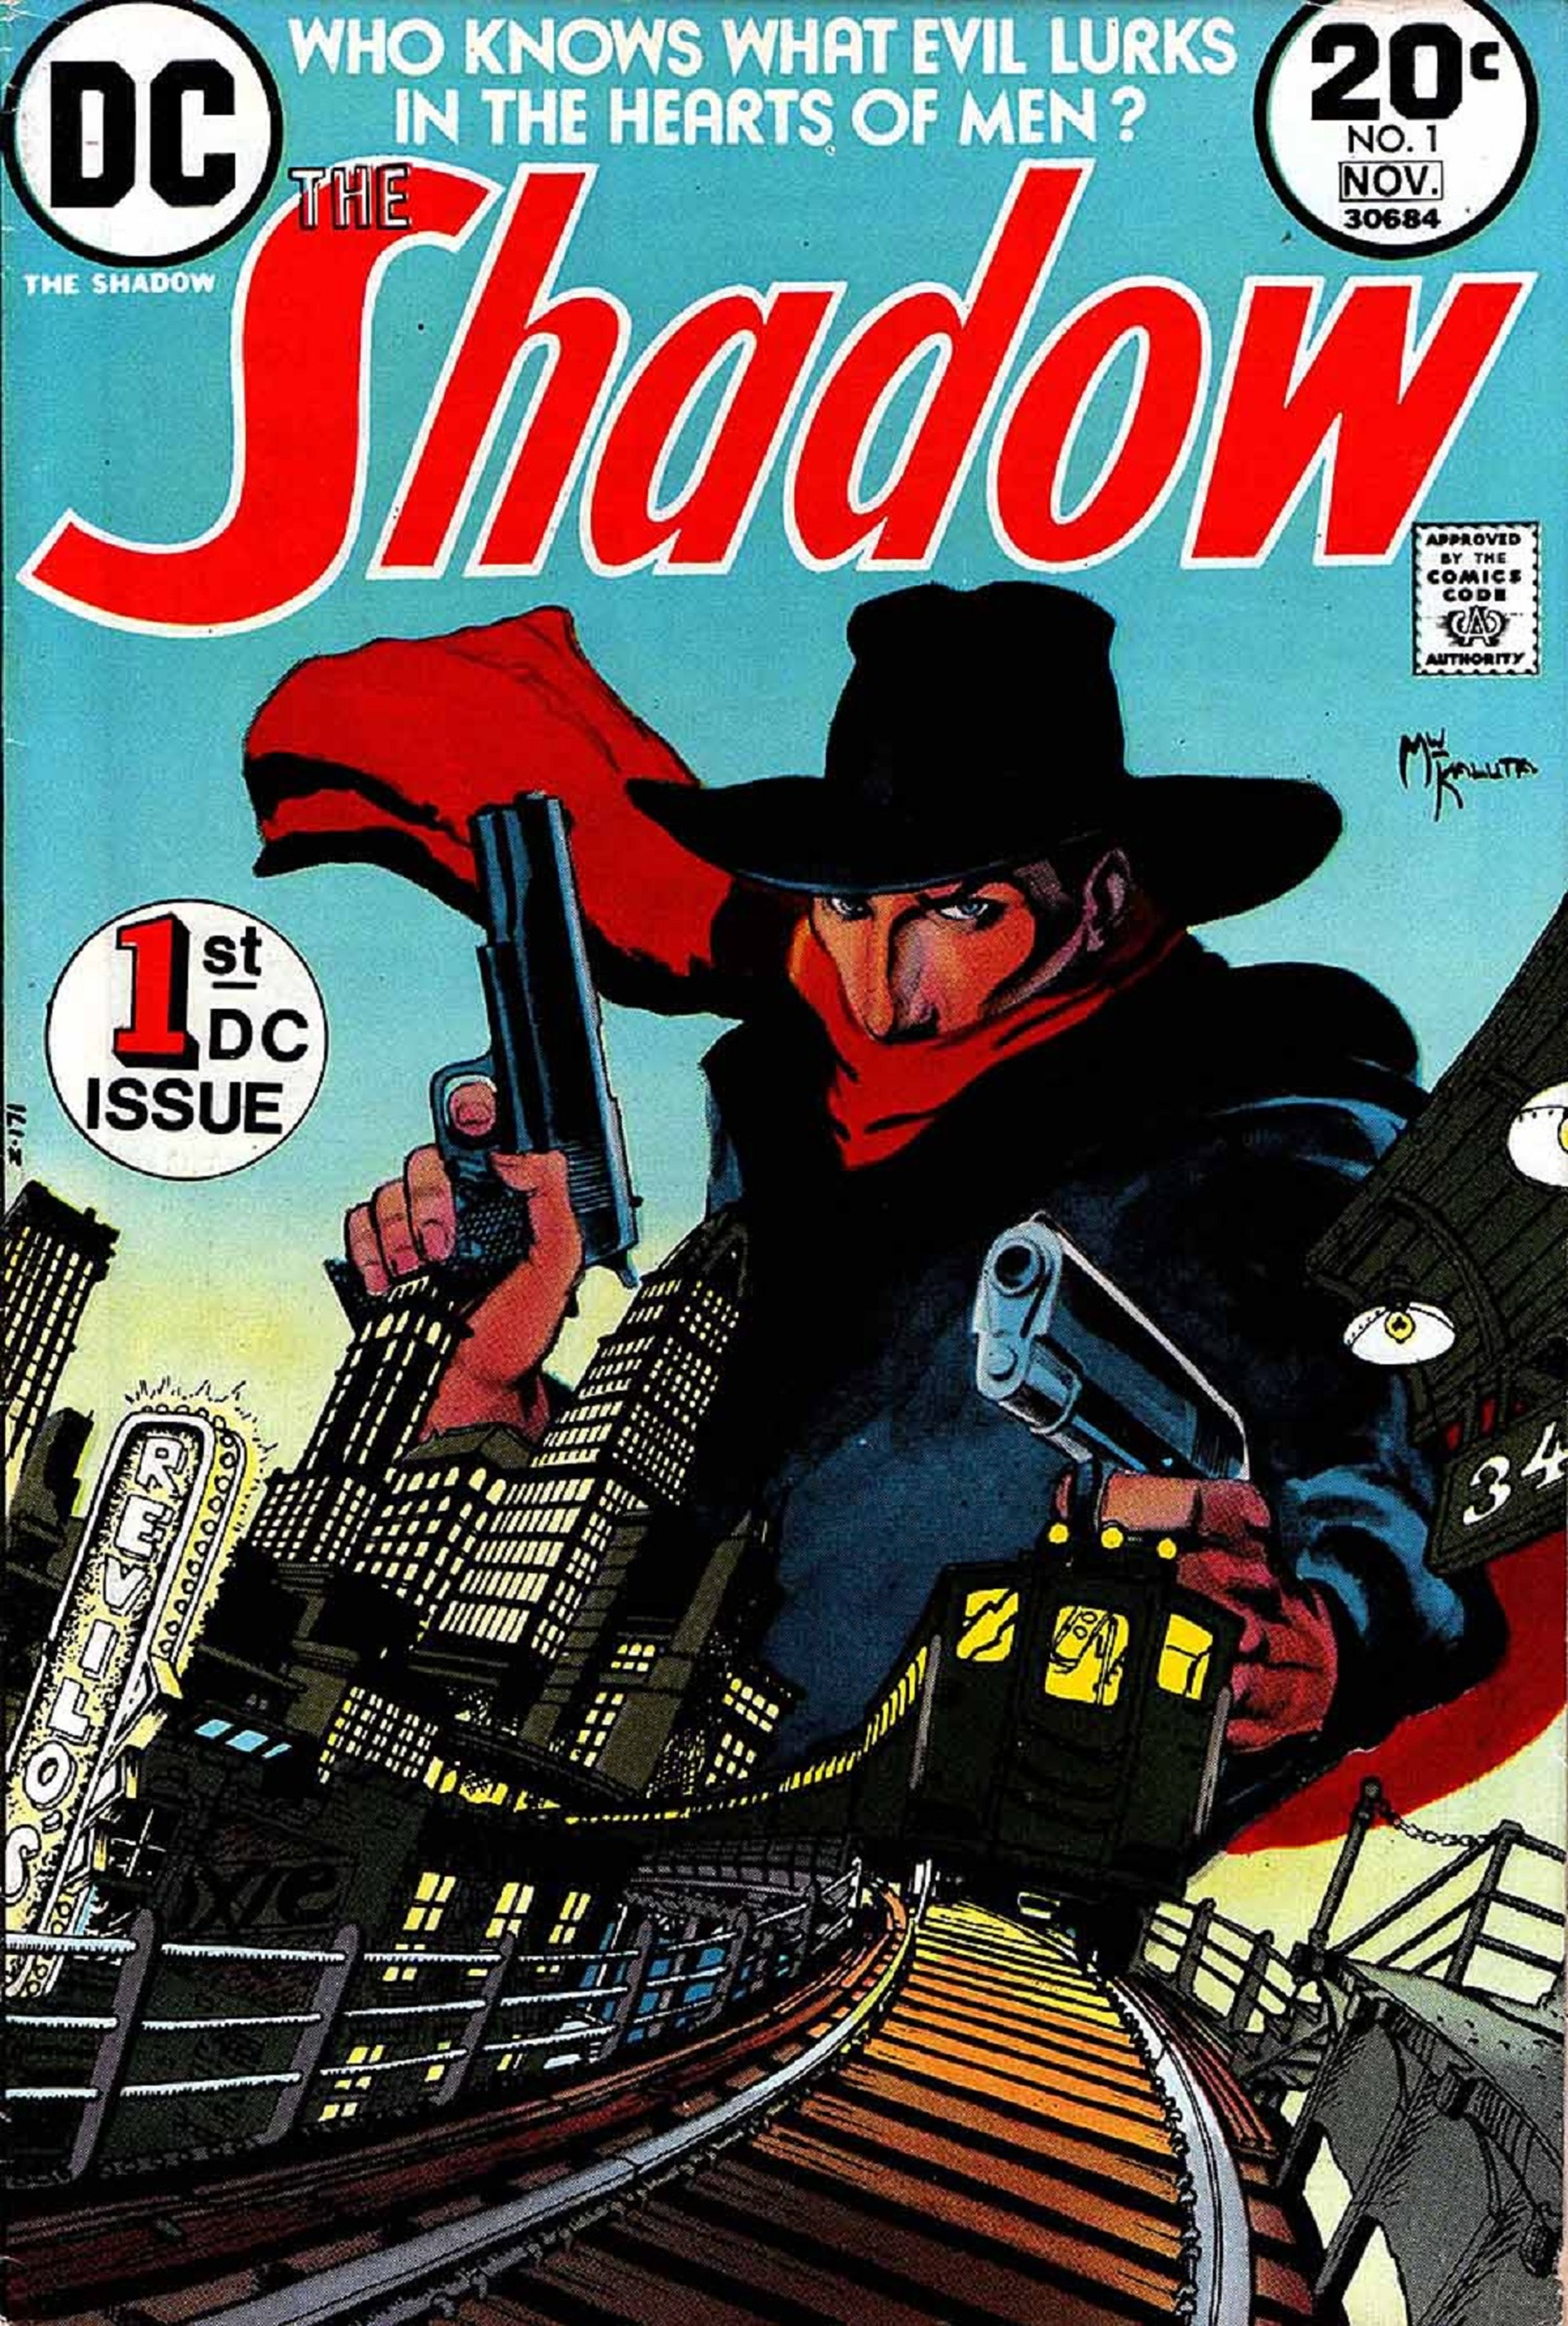 The Shadow (cómic)